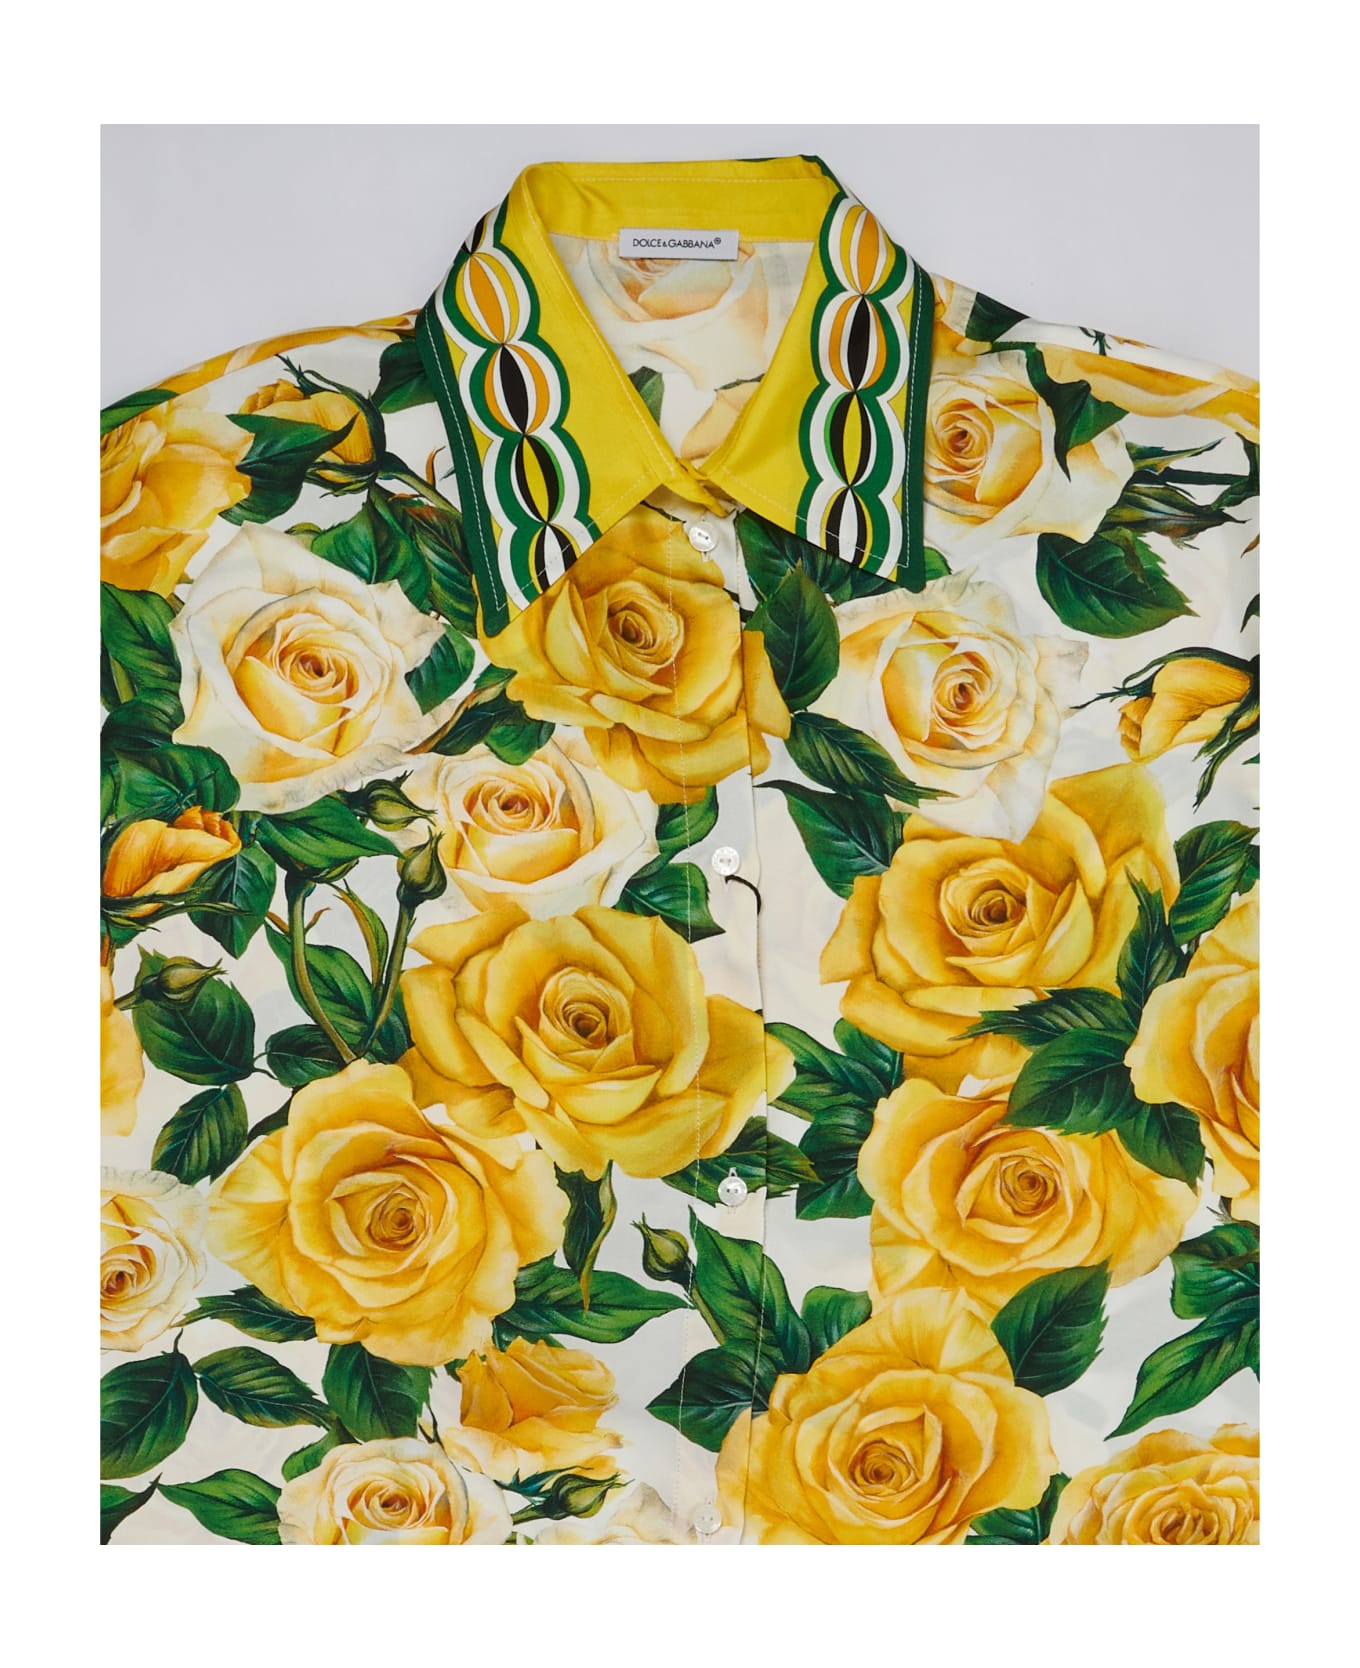 Dolce & Gabbana Shirt Shirt - BIANCO-GIALLO シャツ